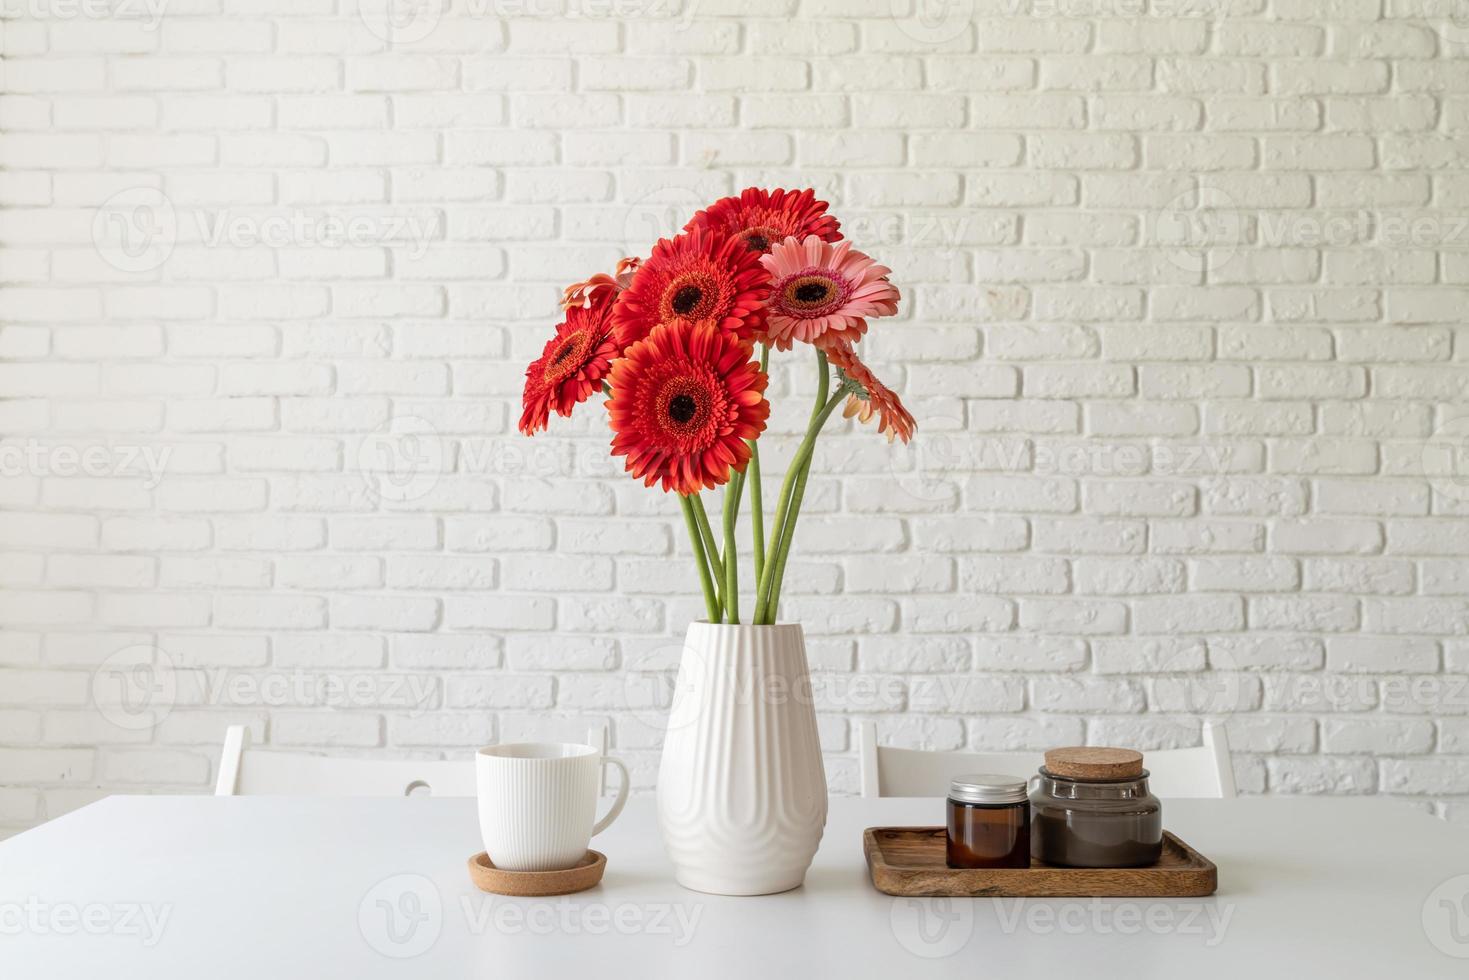 gérbera brilhante em um vaso branco na mesa da cozinha, estilo minimalista foto